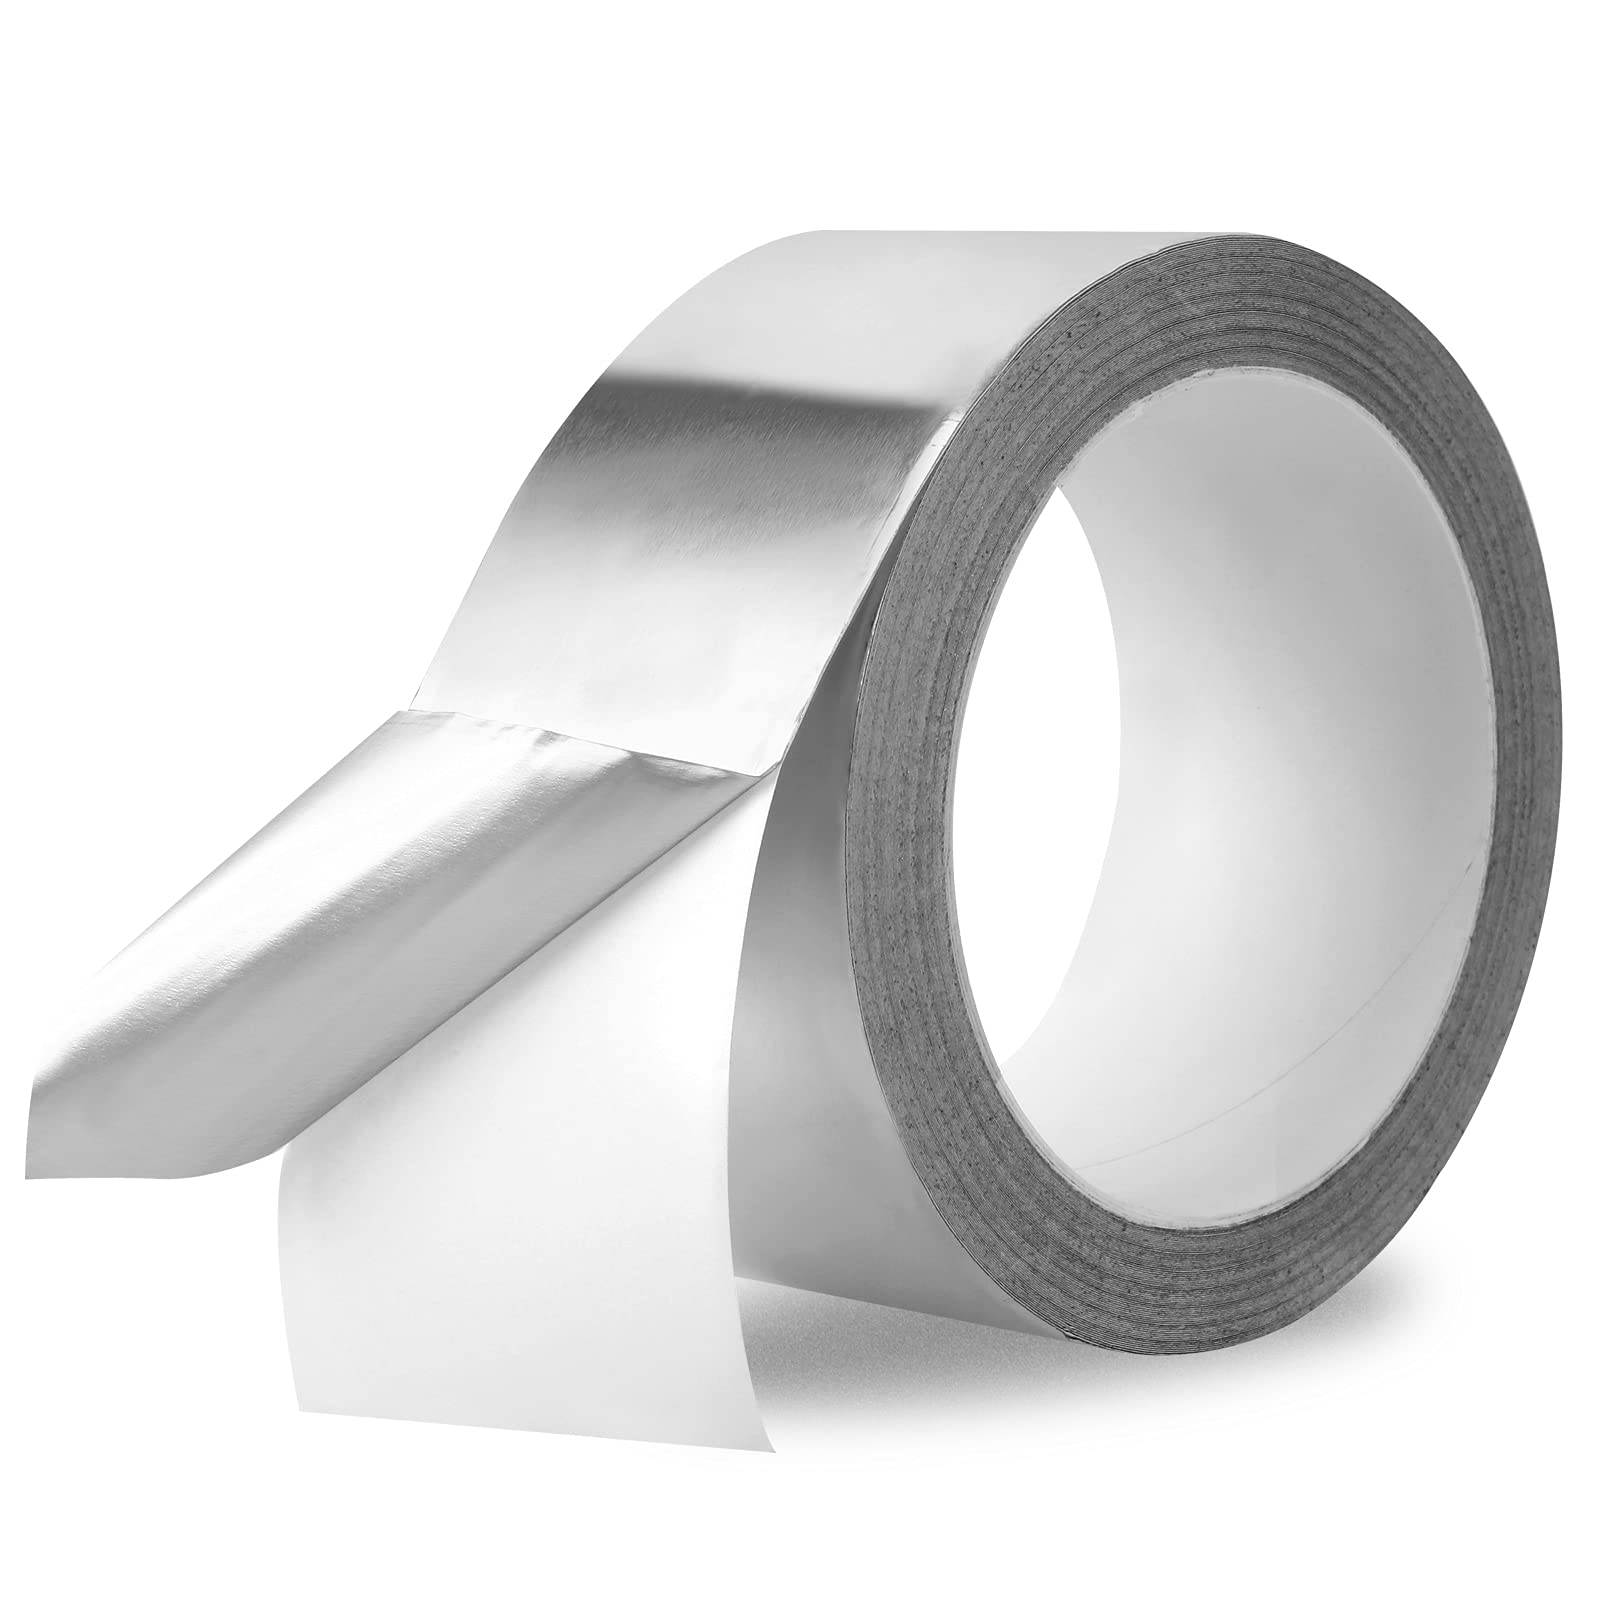 Aluminum Foil Tape - Celadon Aluminum Foil Tape CT425 combines a 3